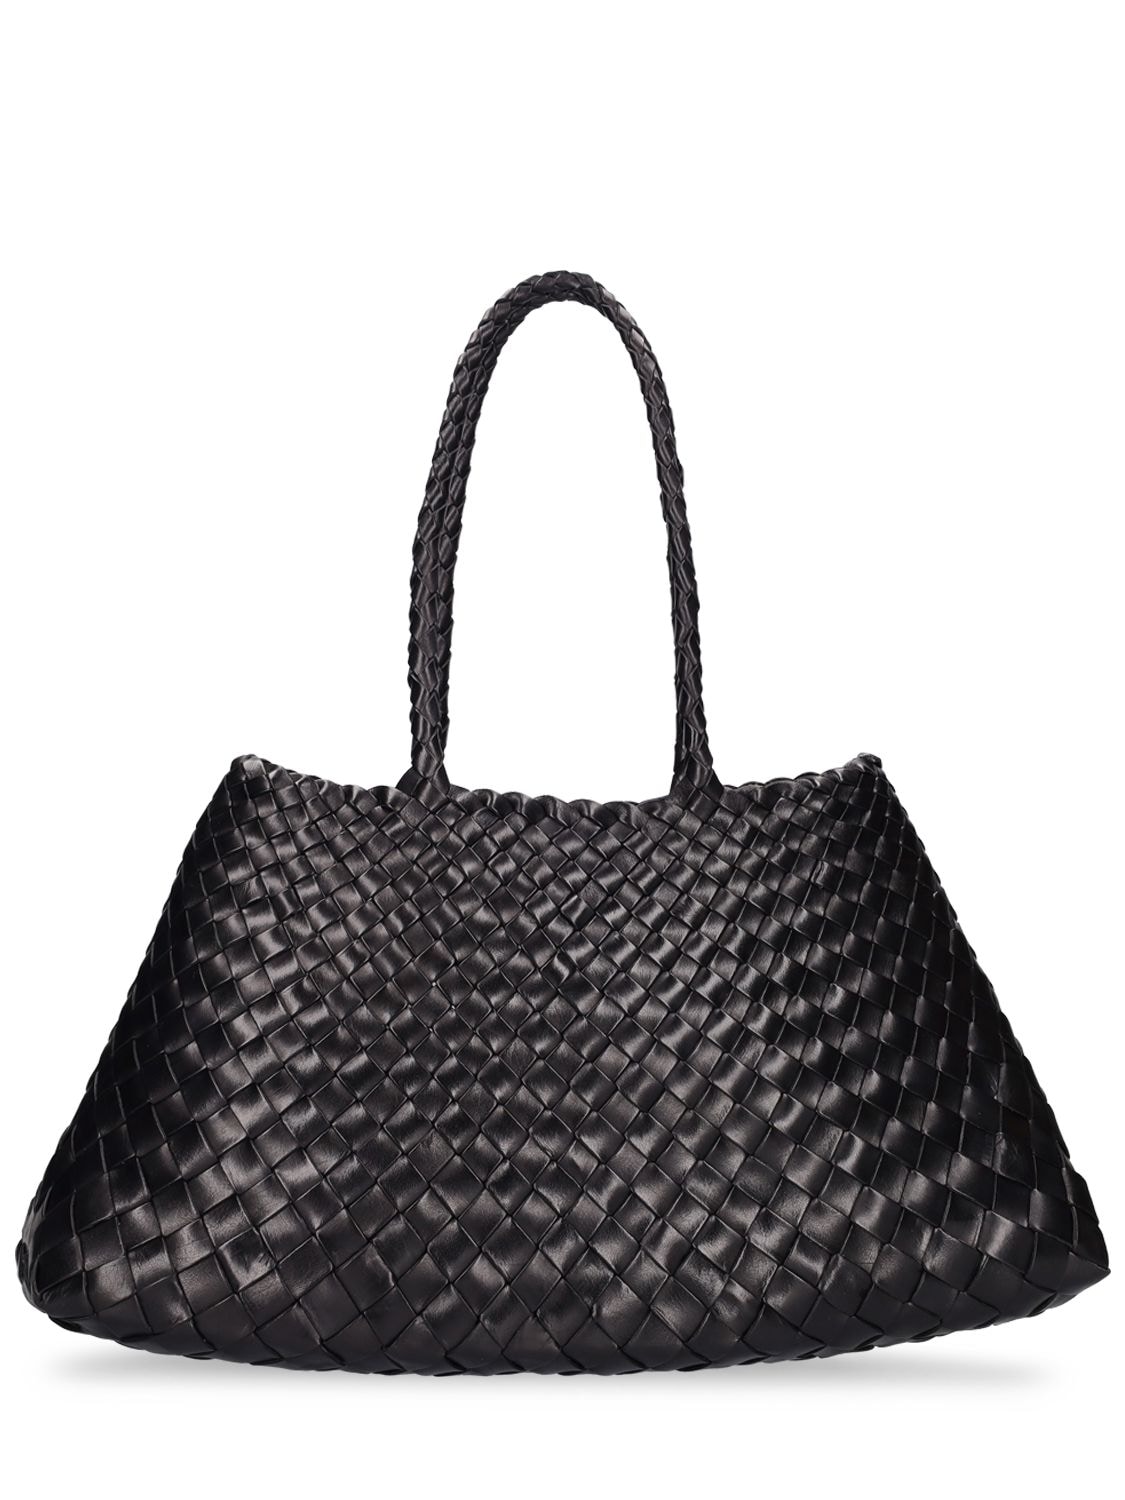 Dragon Diffusion Big Santa Croce Leather Tote Bag In Black